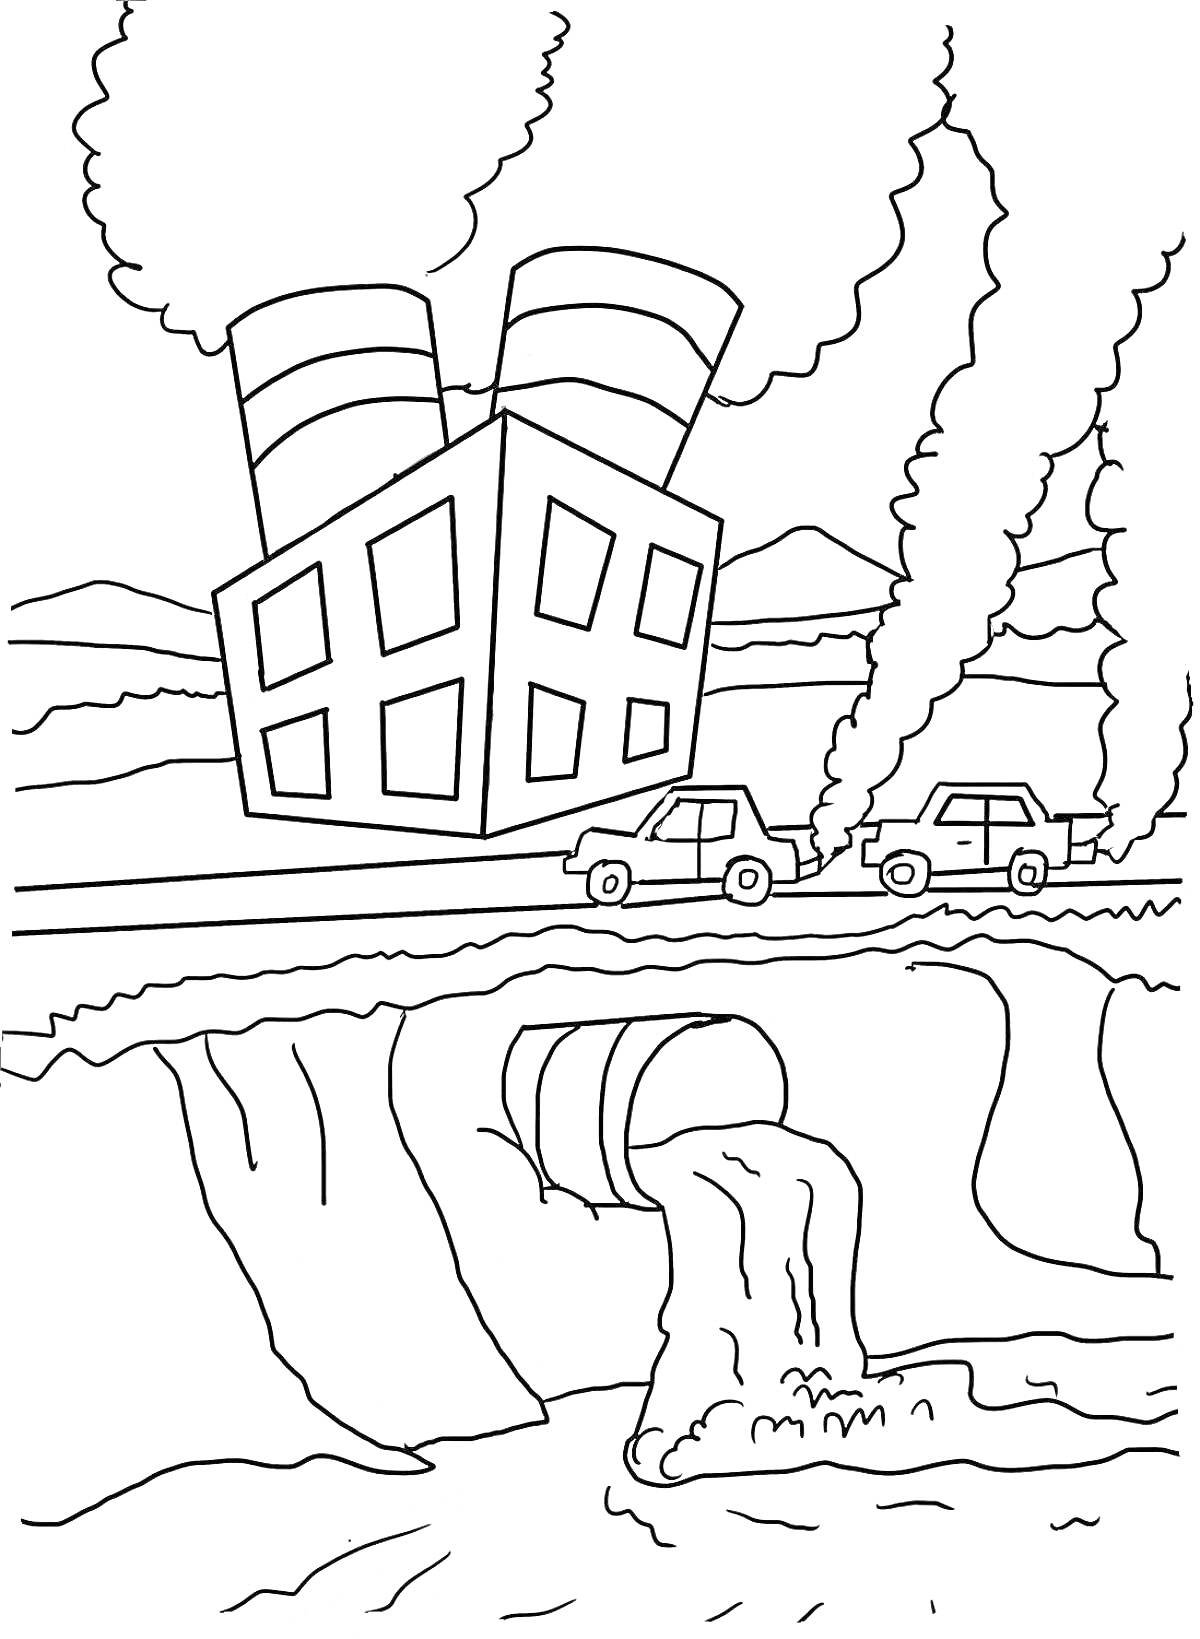 Раскраска Завод с трубами, дым, автомобили, выбросы в реку